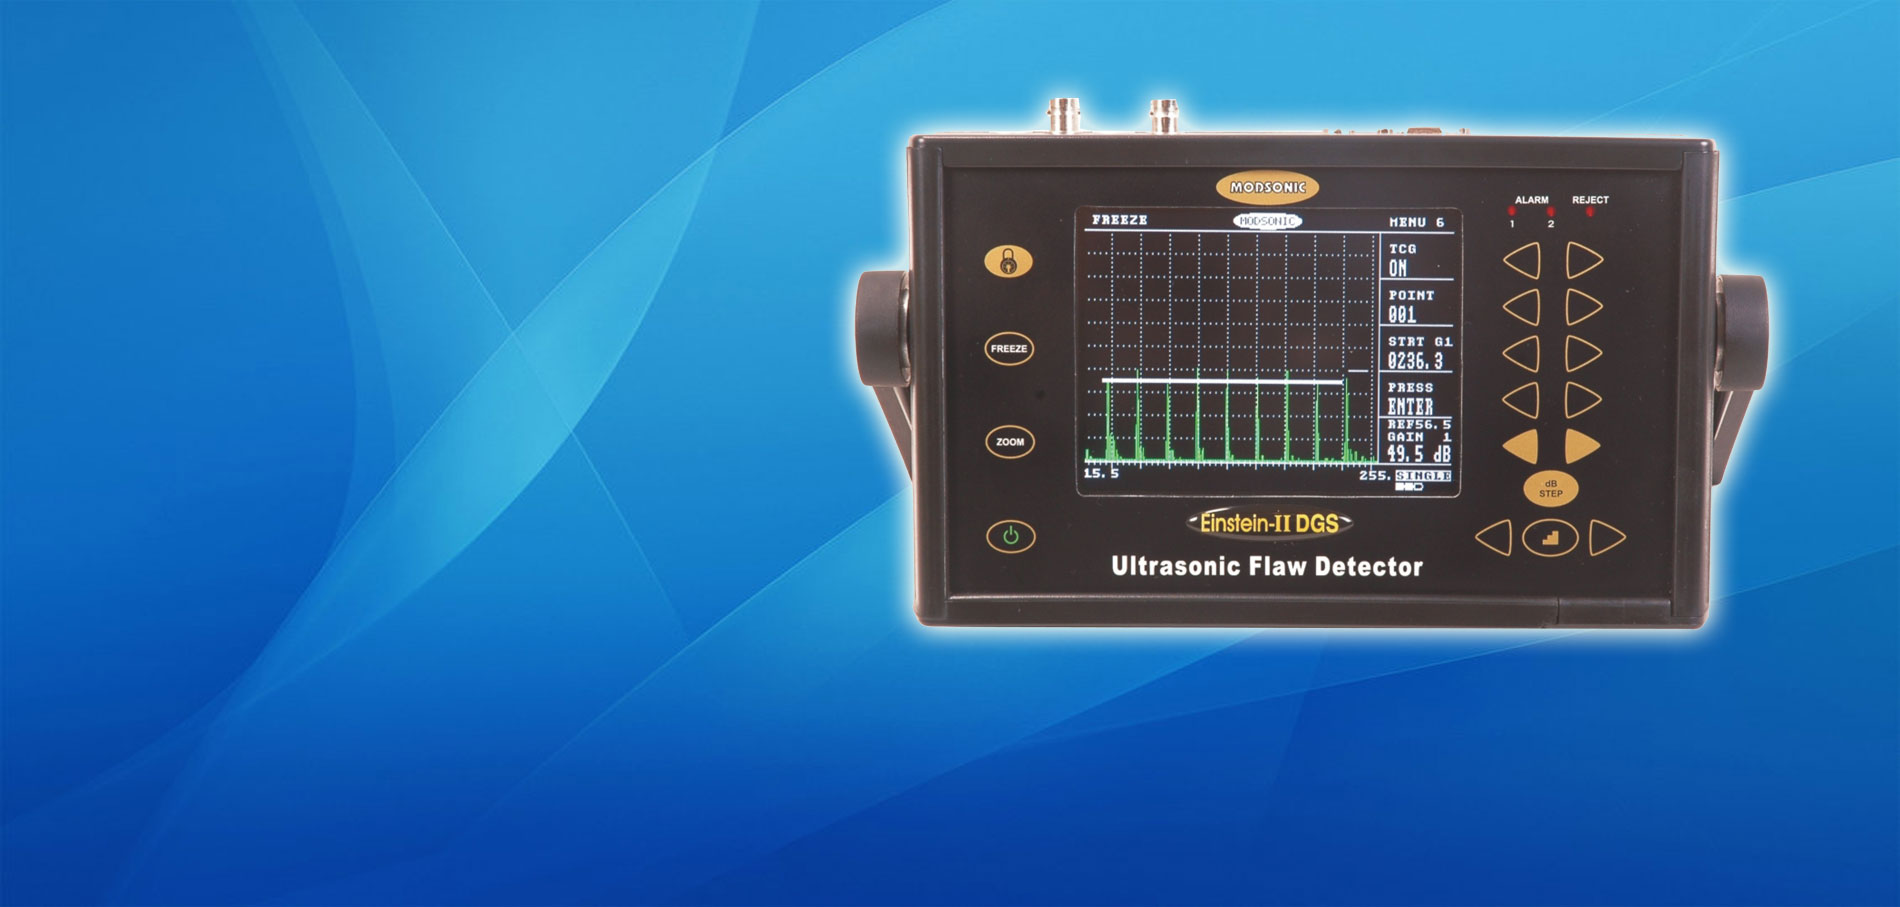 Einstein-II DGS Ultrasonic Flaw Detector